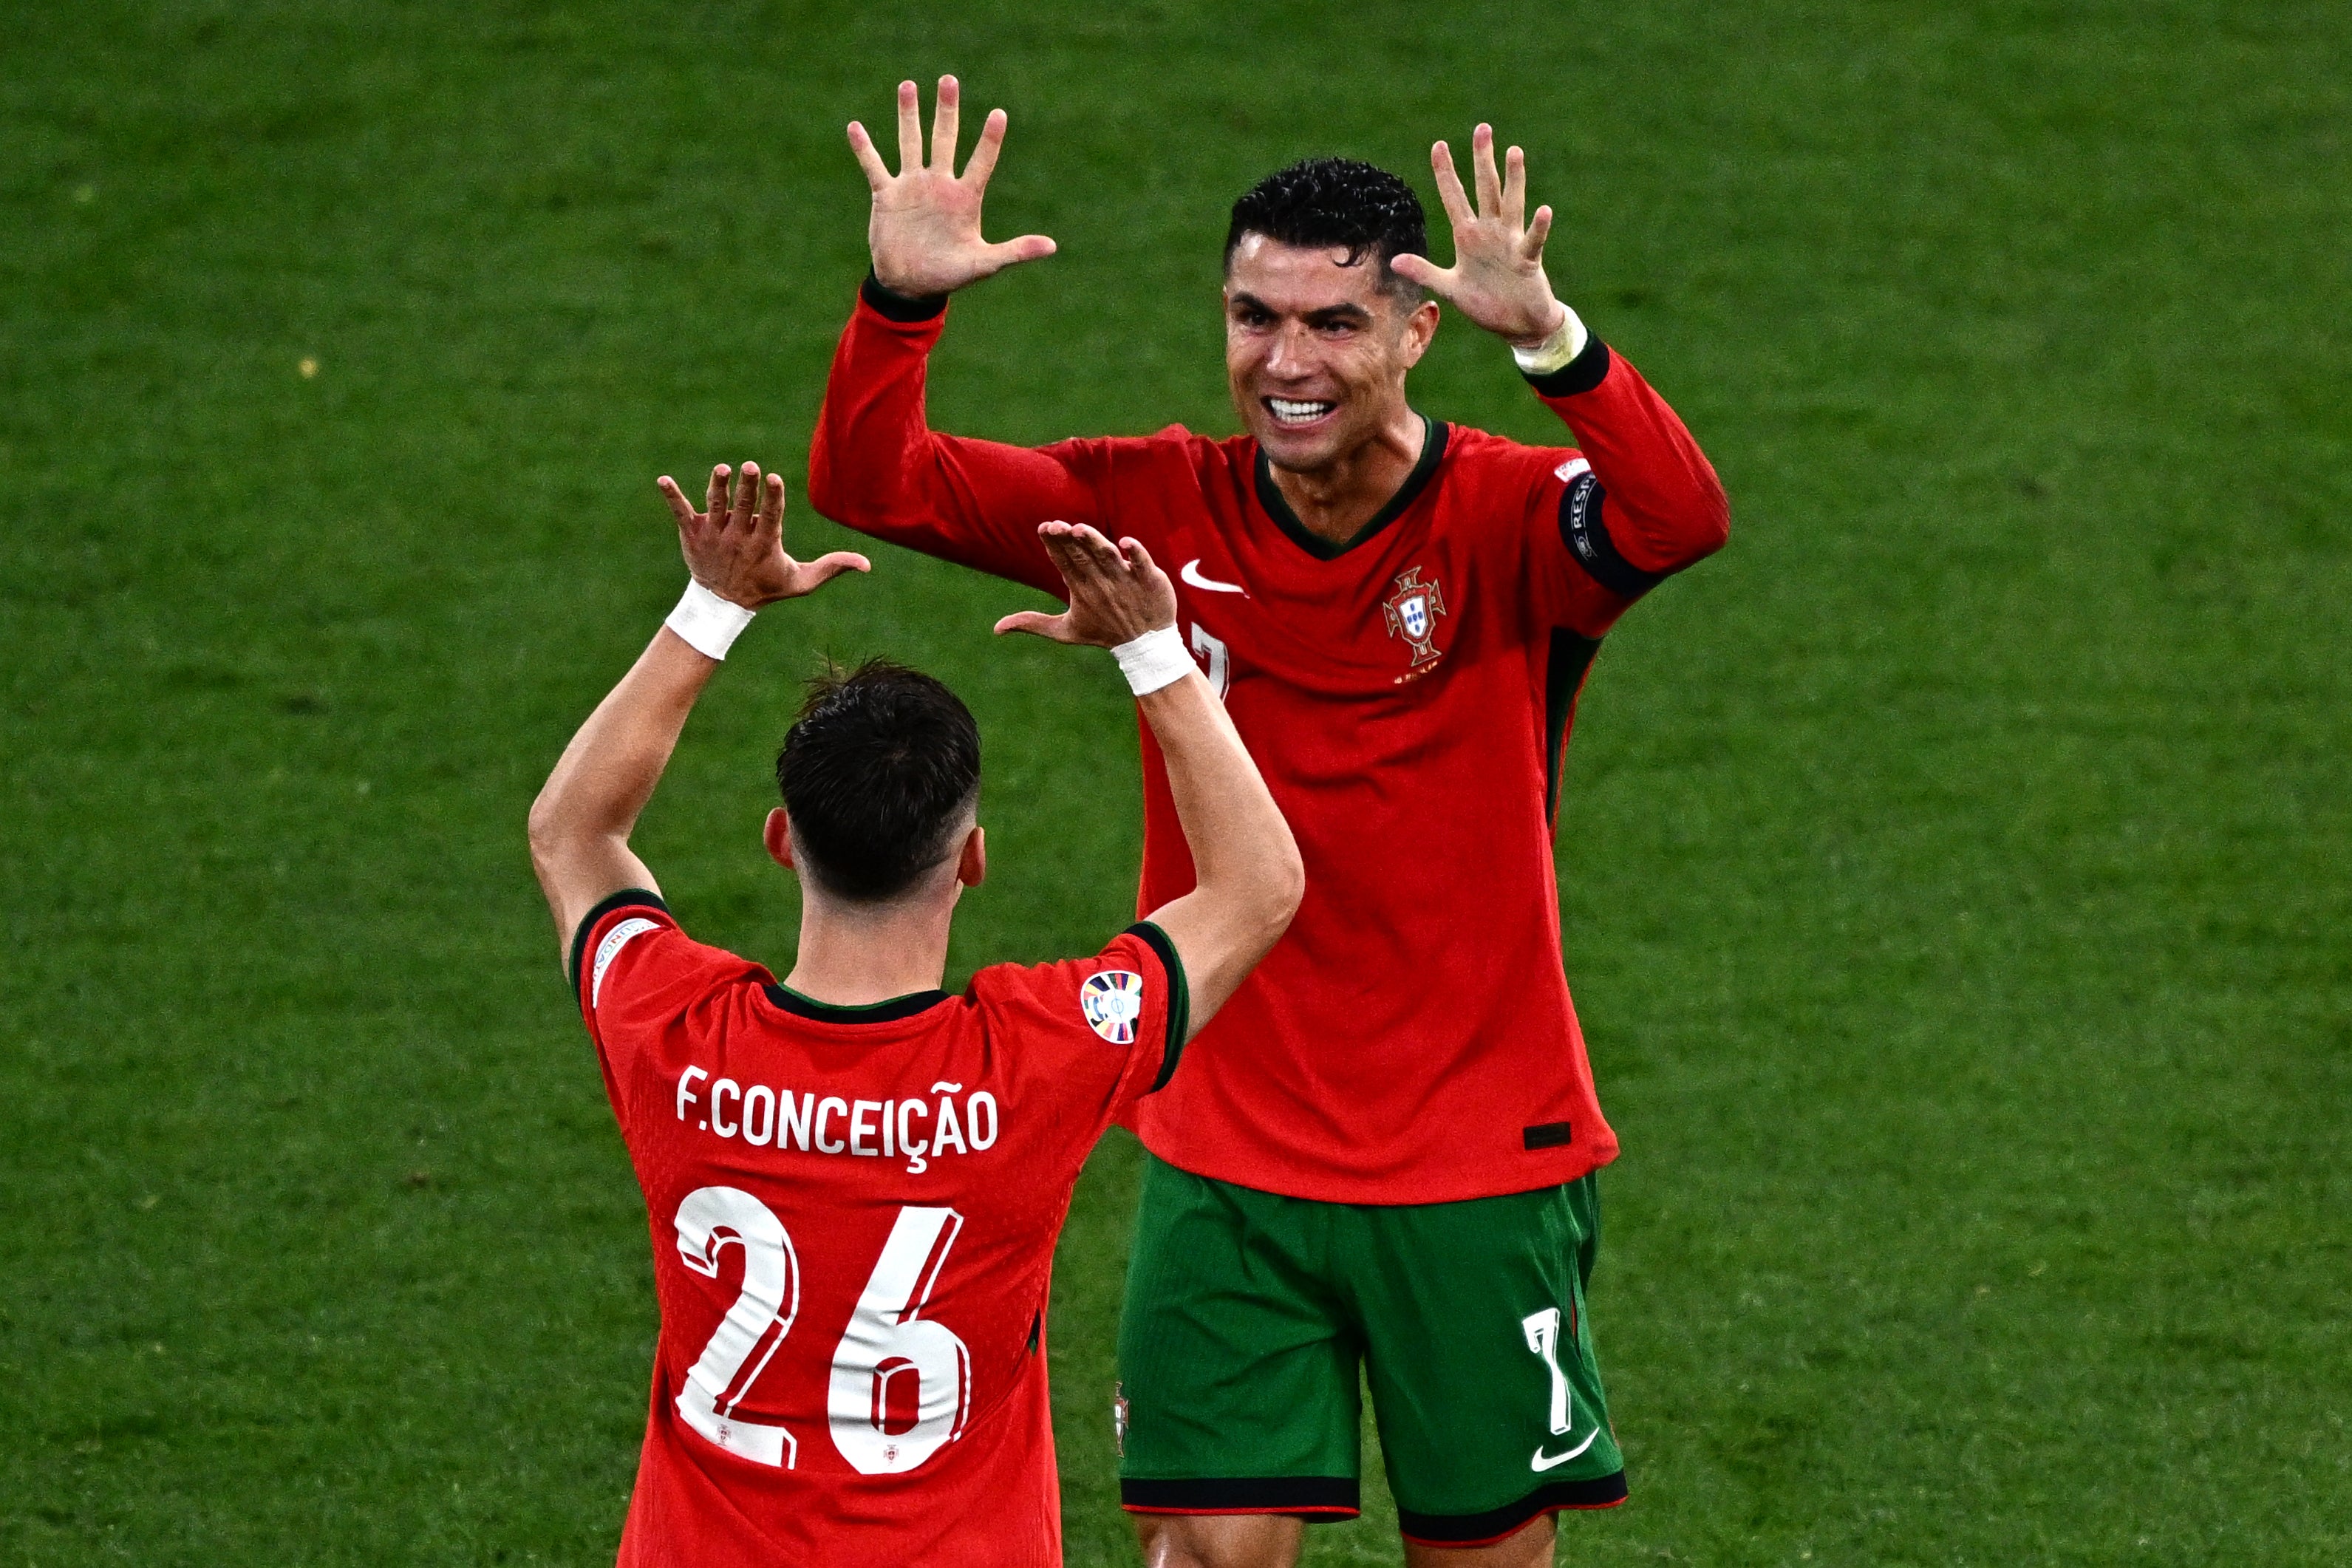 Ronaldo celebrates with match-winner Conceicao